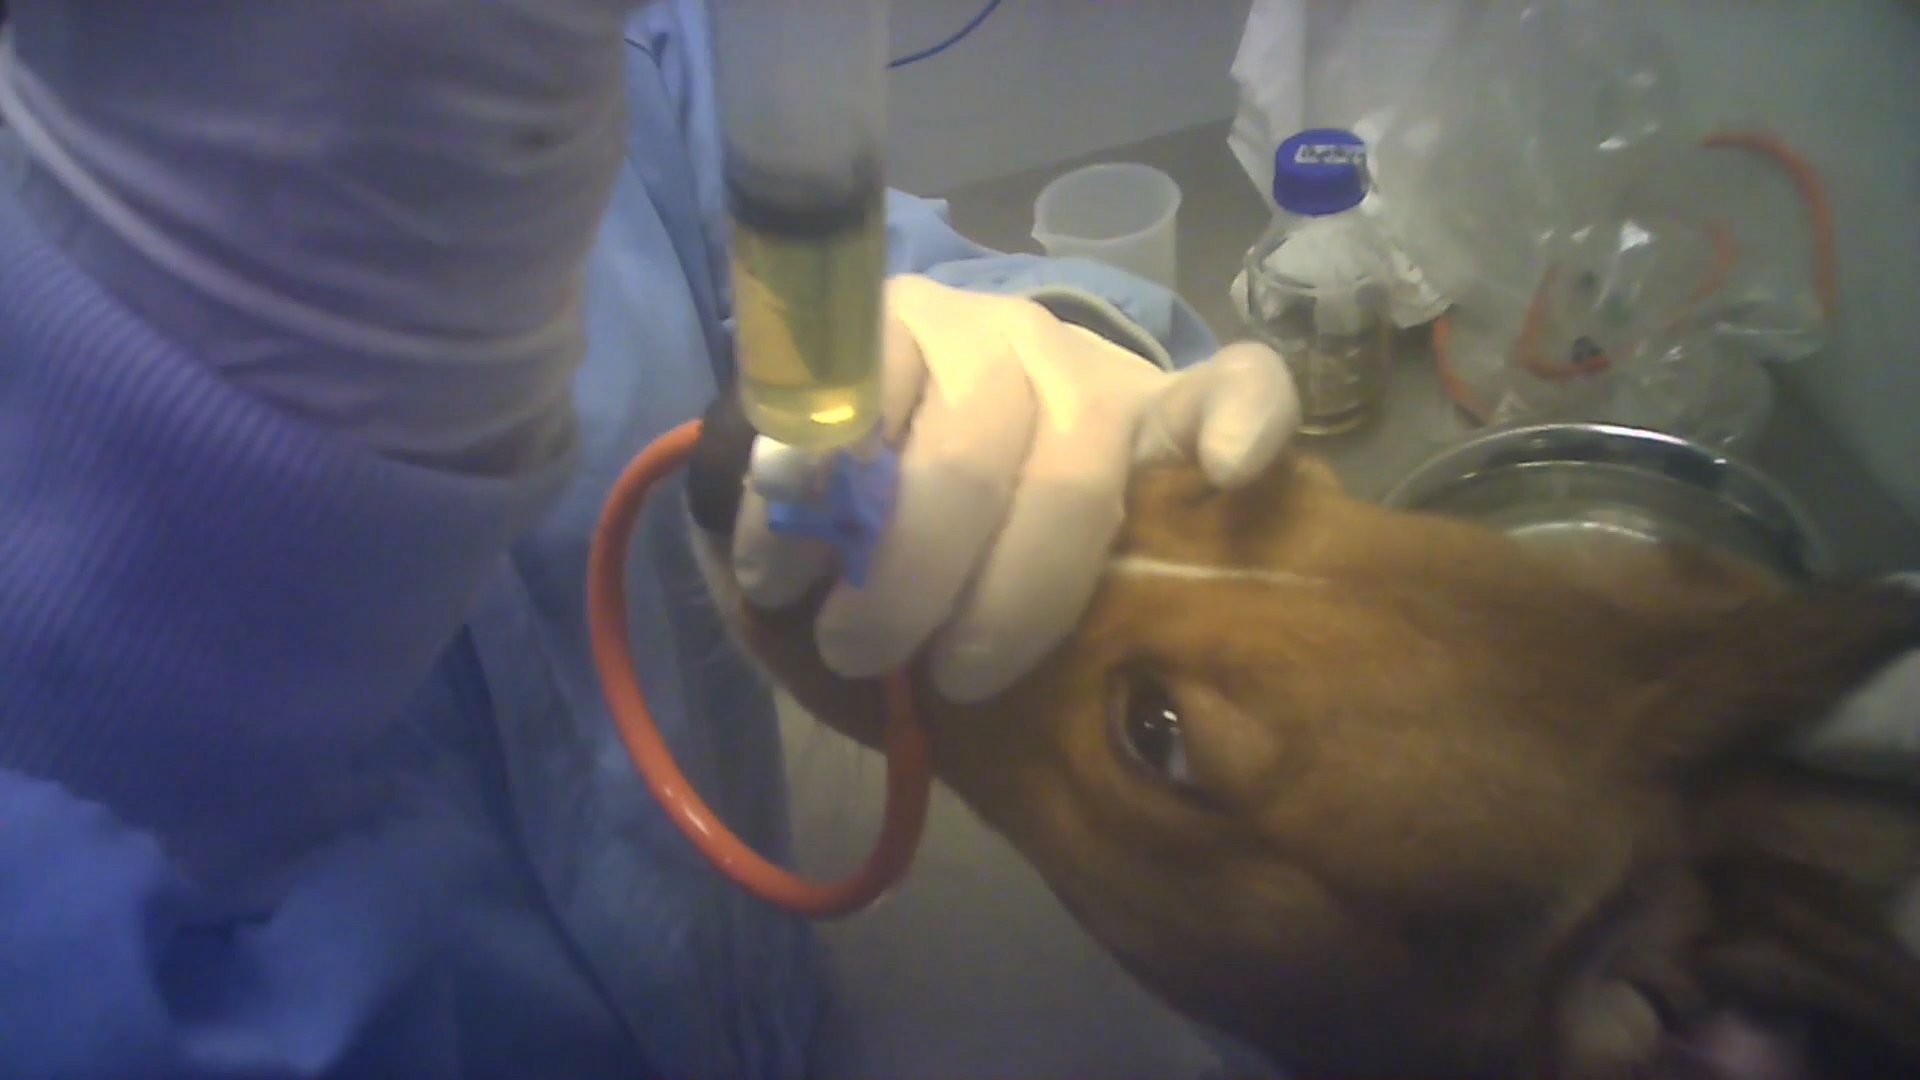 CFI SPAIN dog injection.jpg